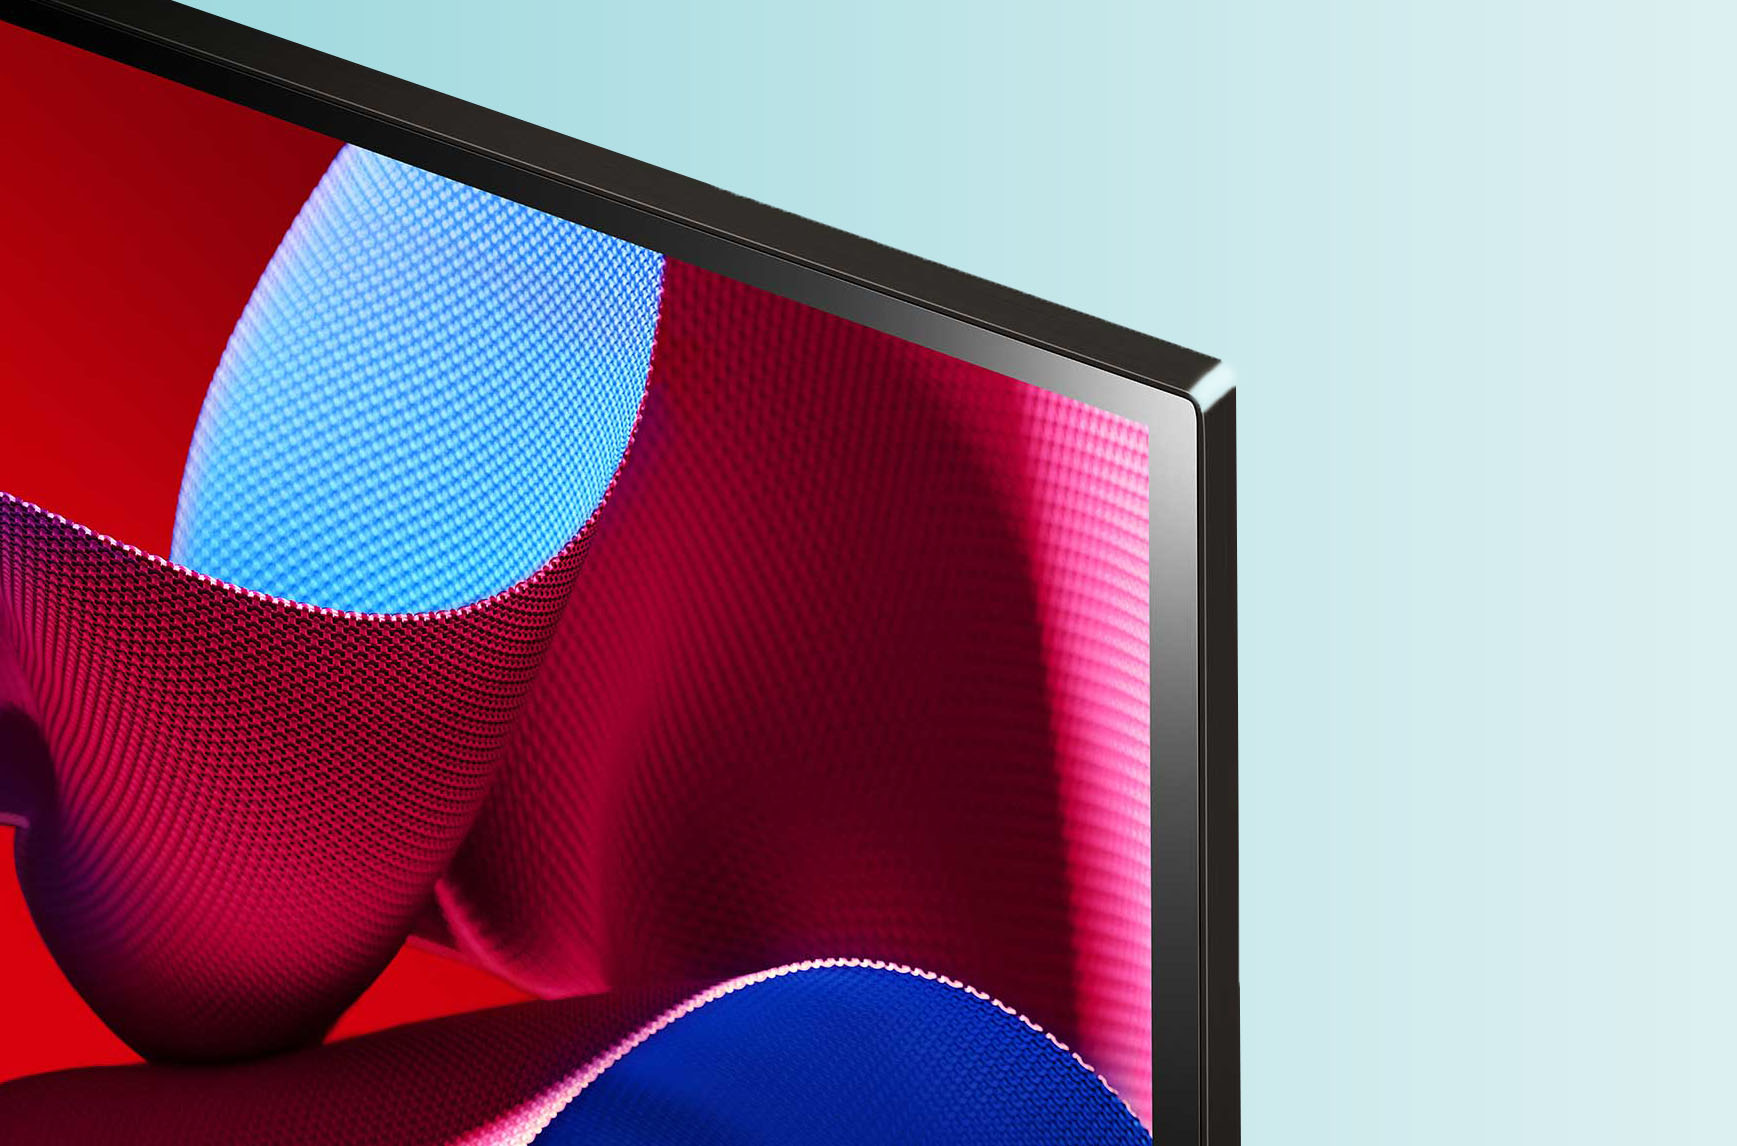 Das Display des LG OLED C4 kommt ohne Rahmen aus und ist nur 5 mm dünn.